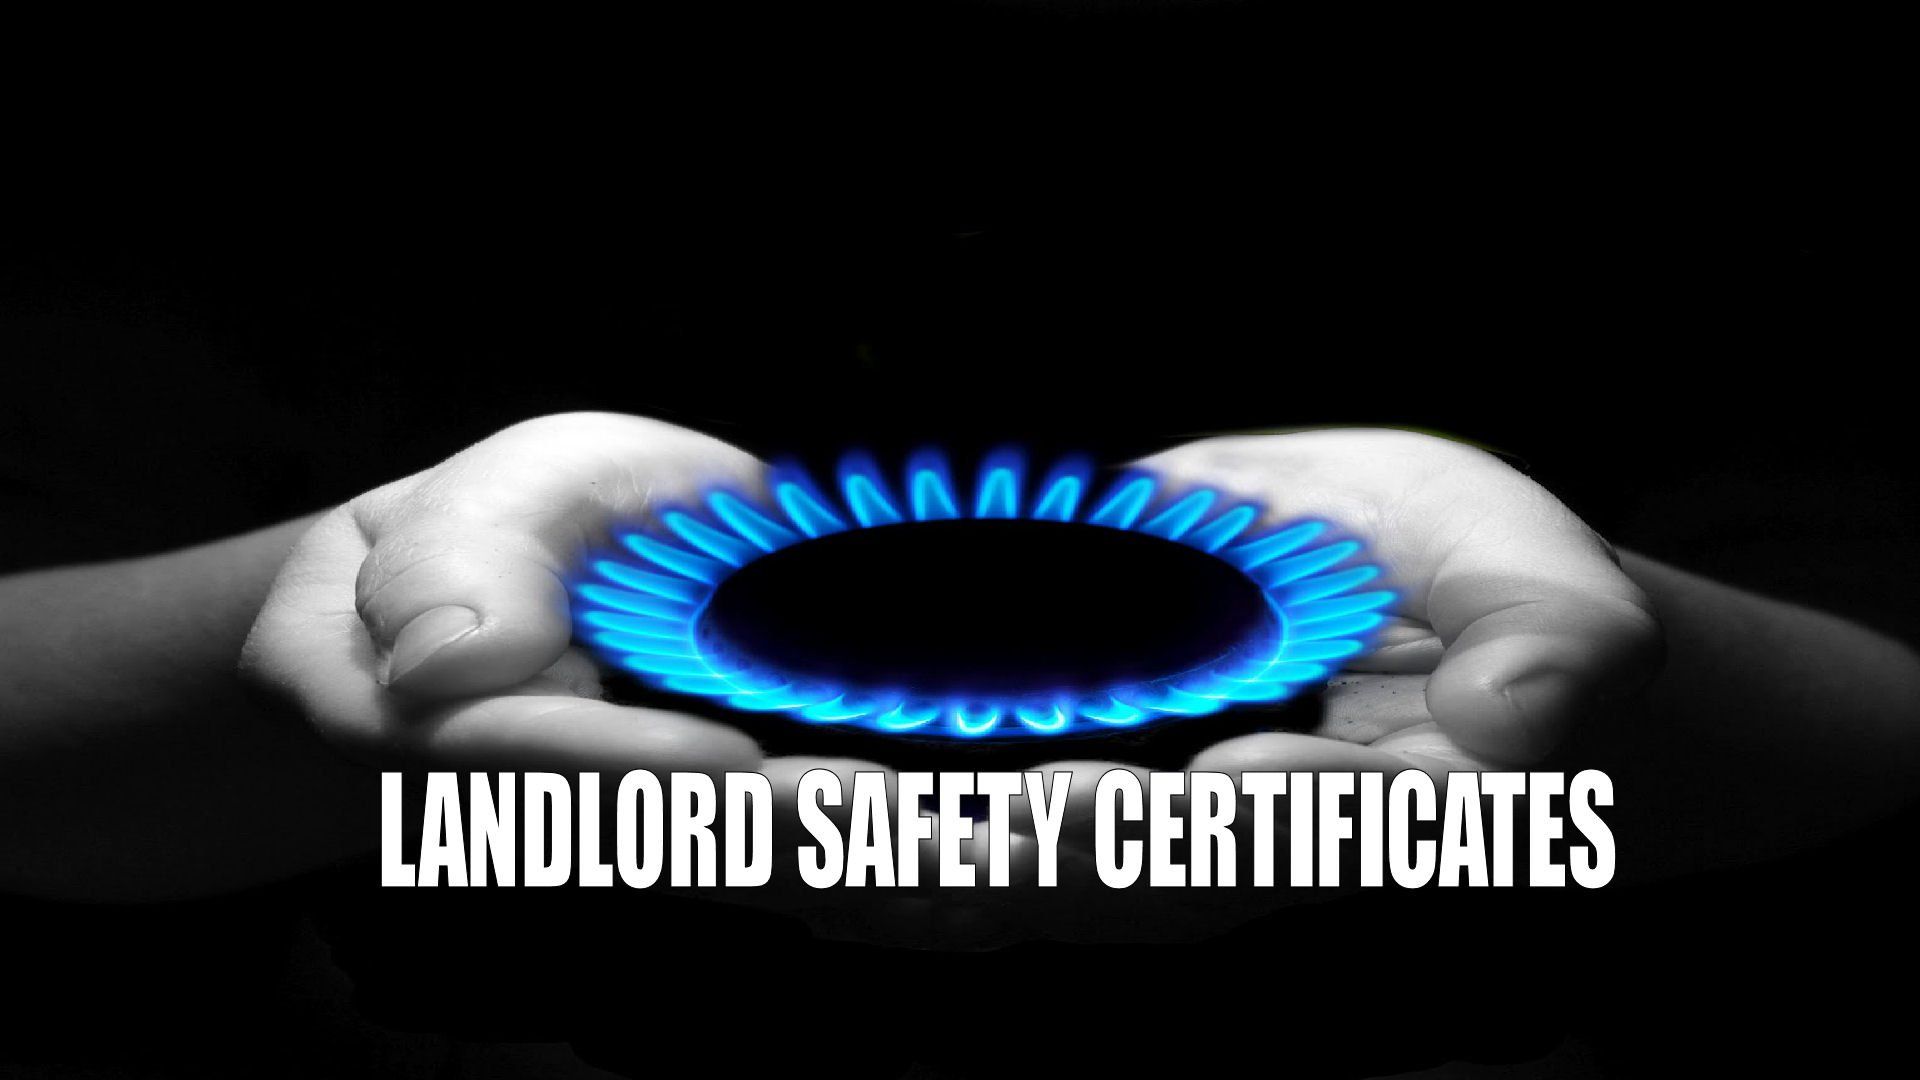 Landlord Safety Certificates bangor